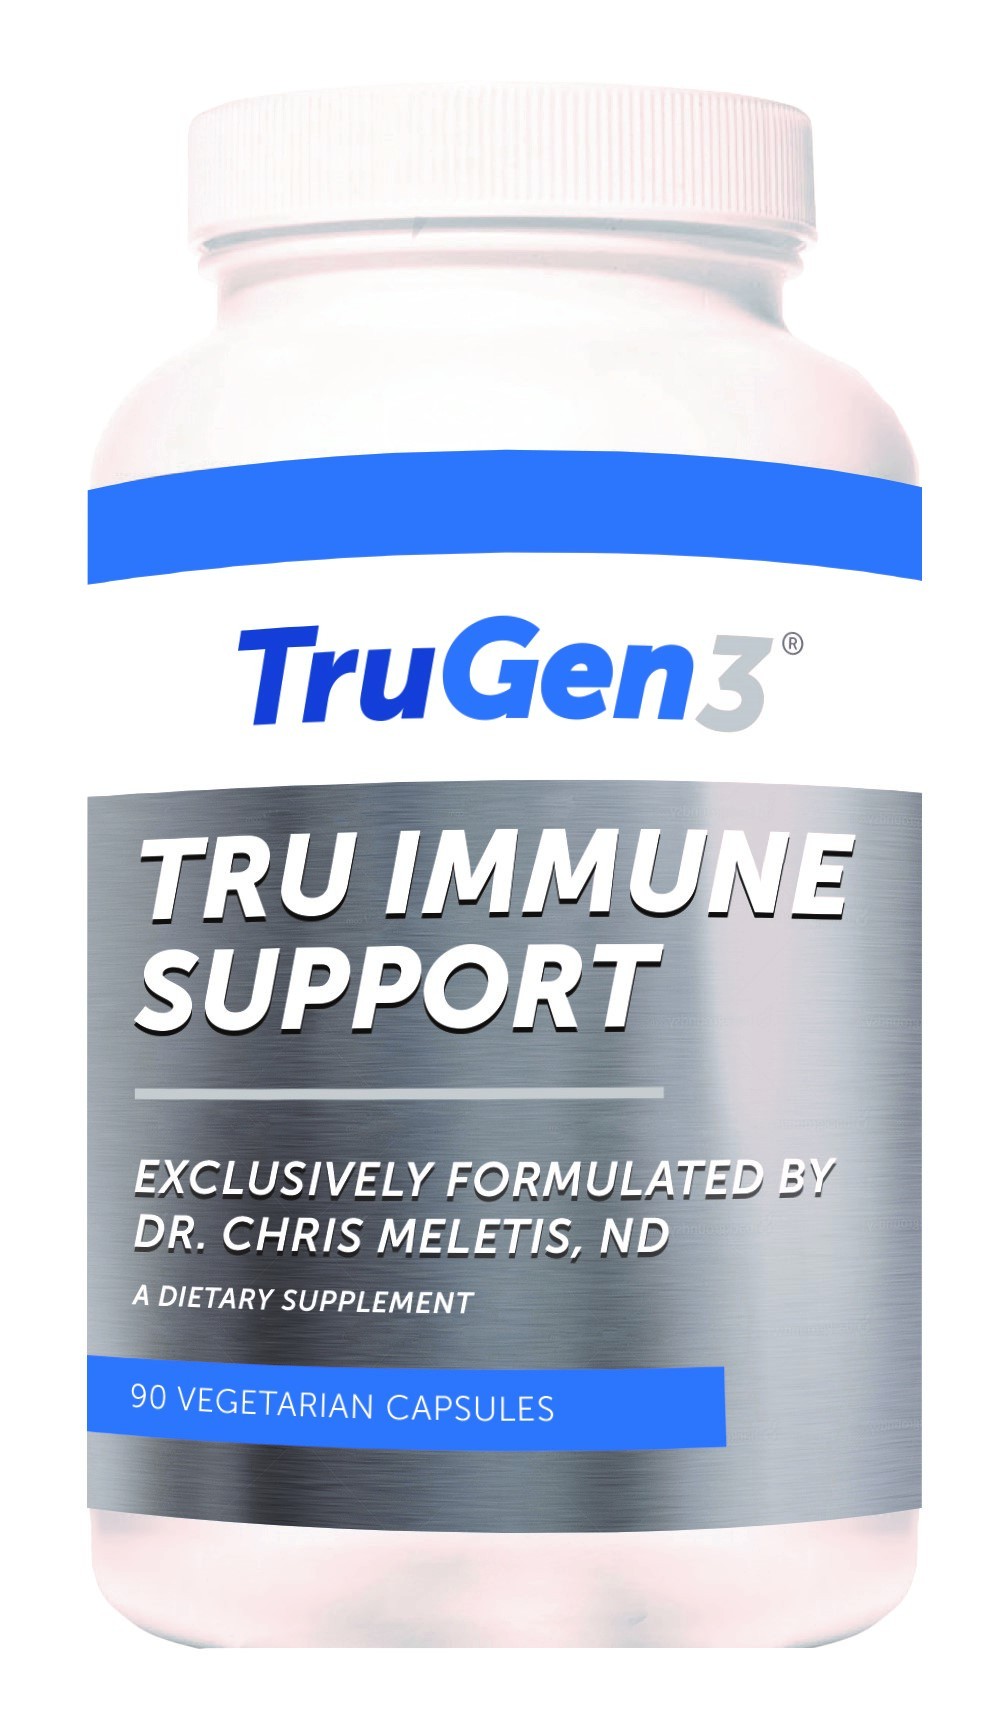 Tru Immune Support supplement bottle